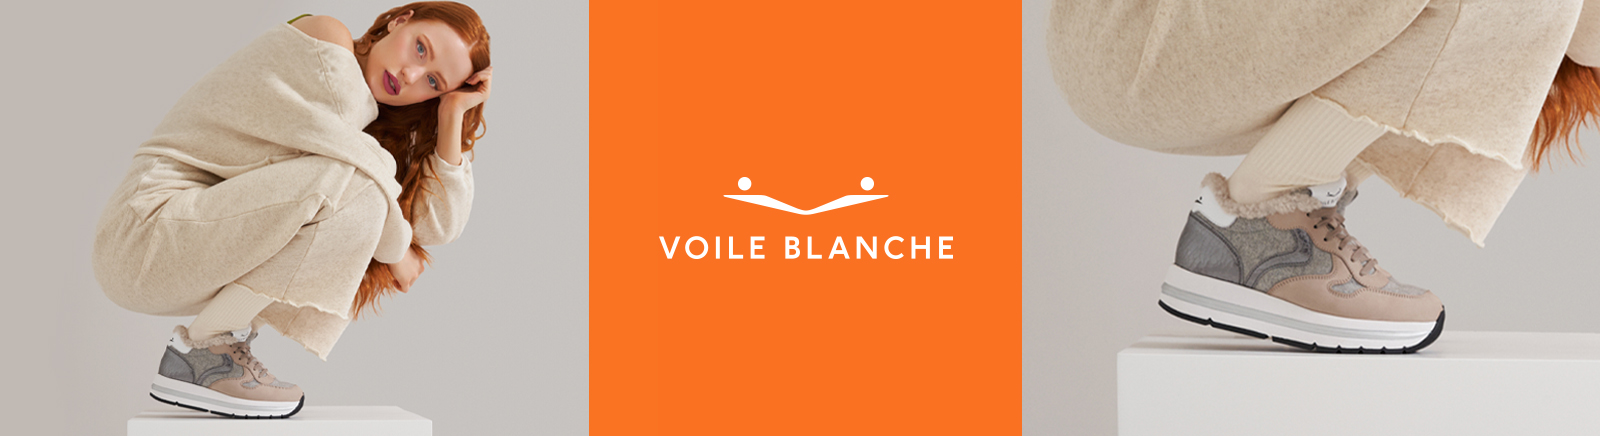 Voile Blanche Schuhe kaufen &#9654; Mit extravaganten Details | GISY